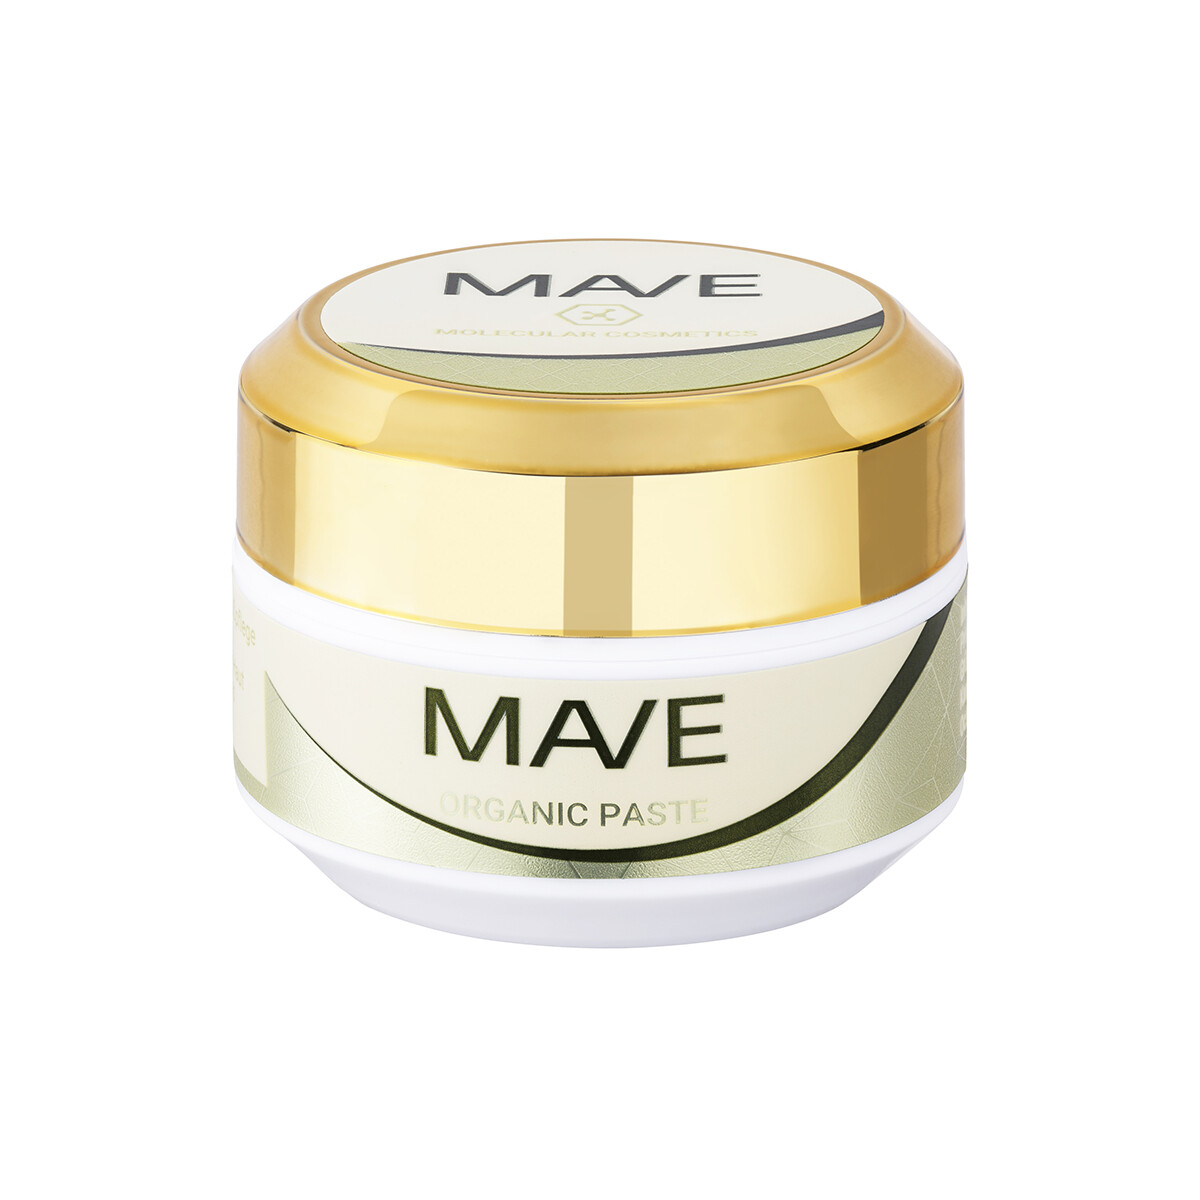 MAVE - Organic Paste skin repair 15ml